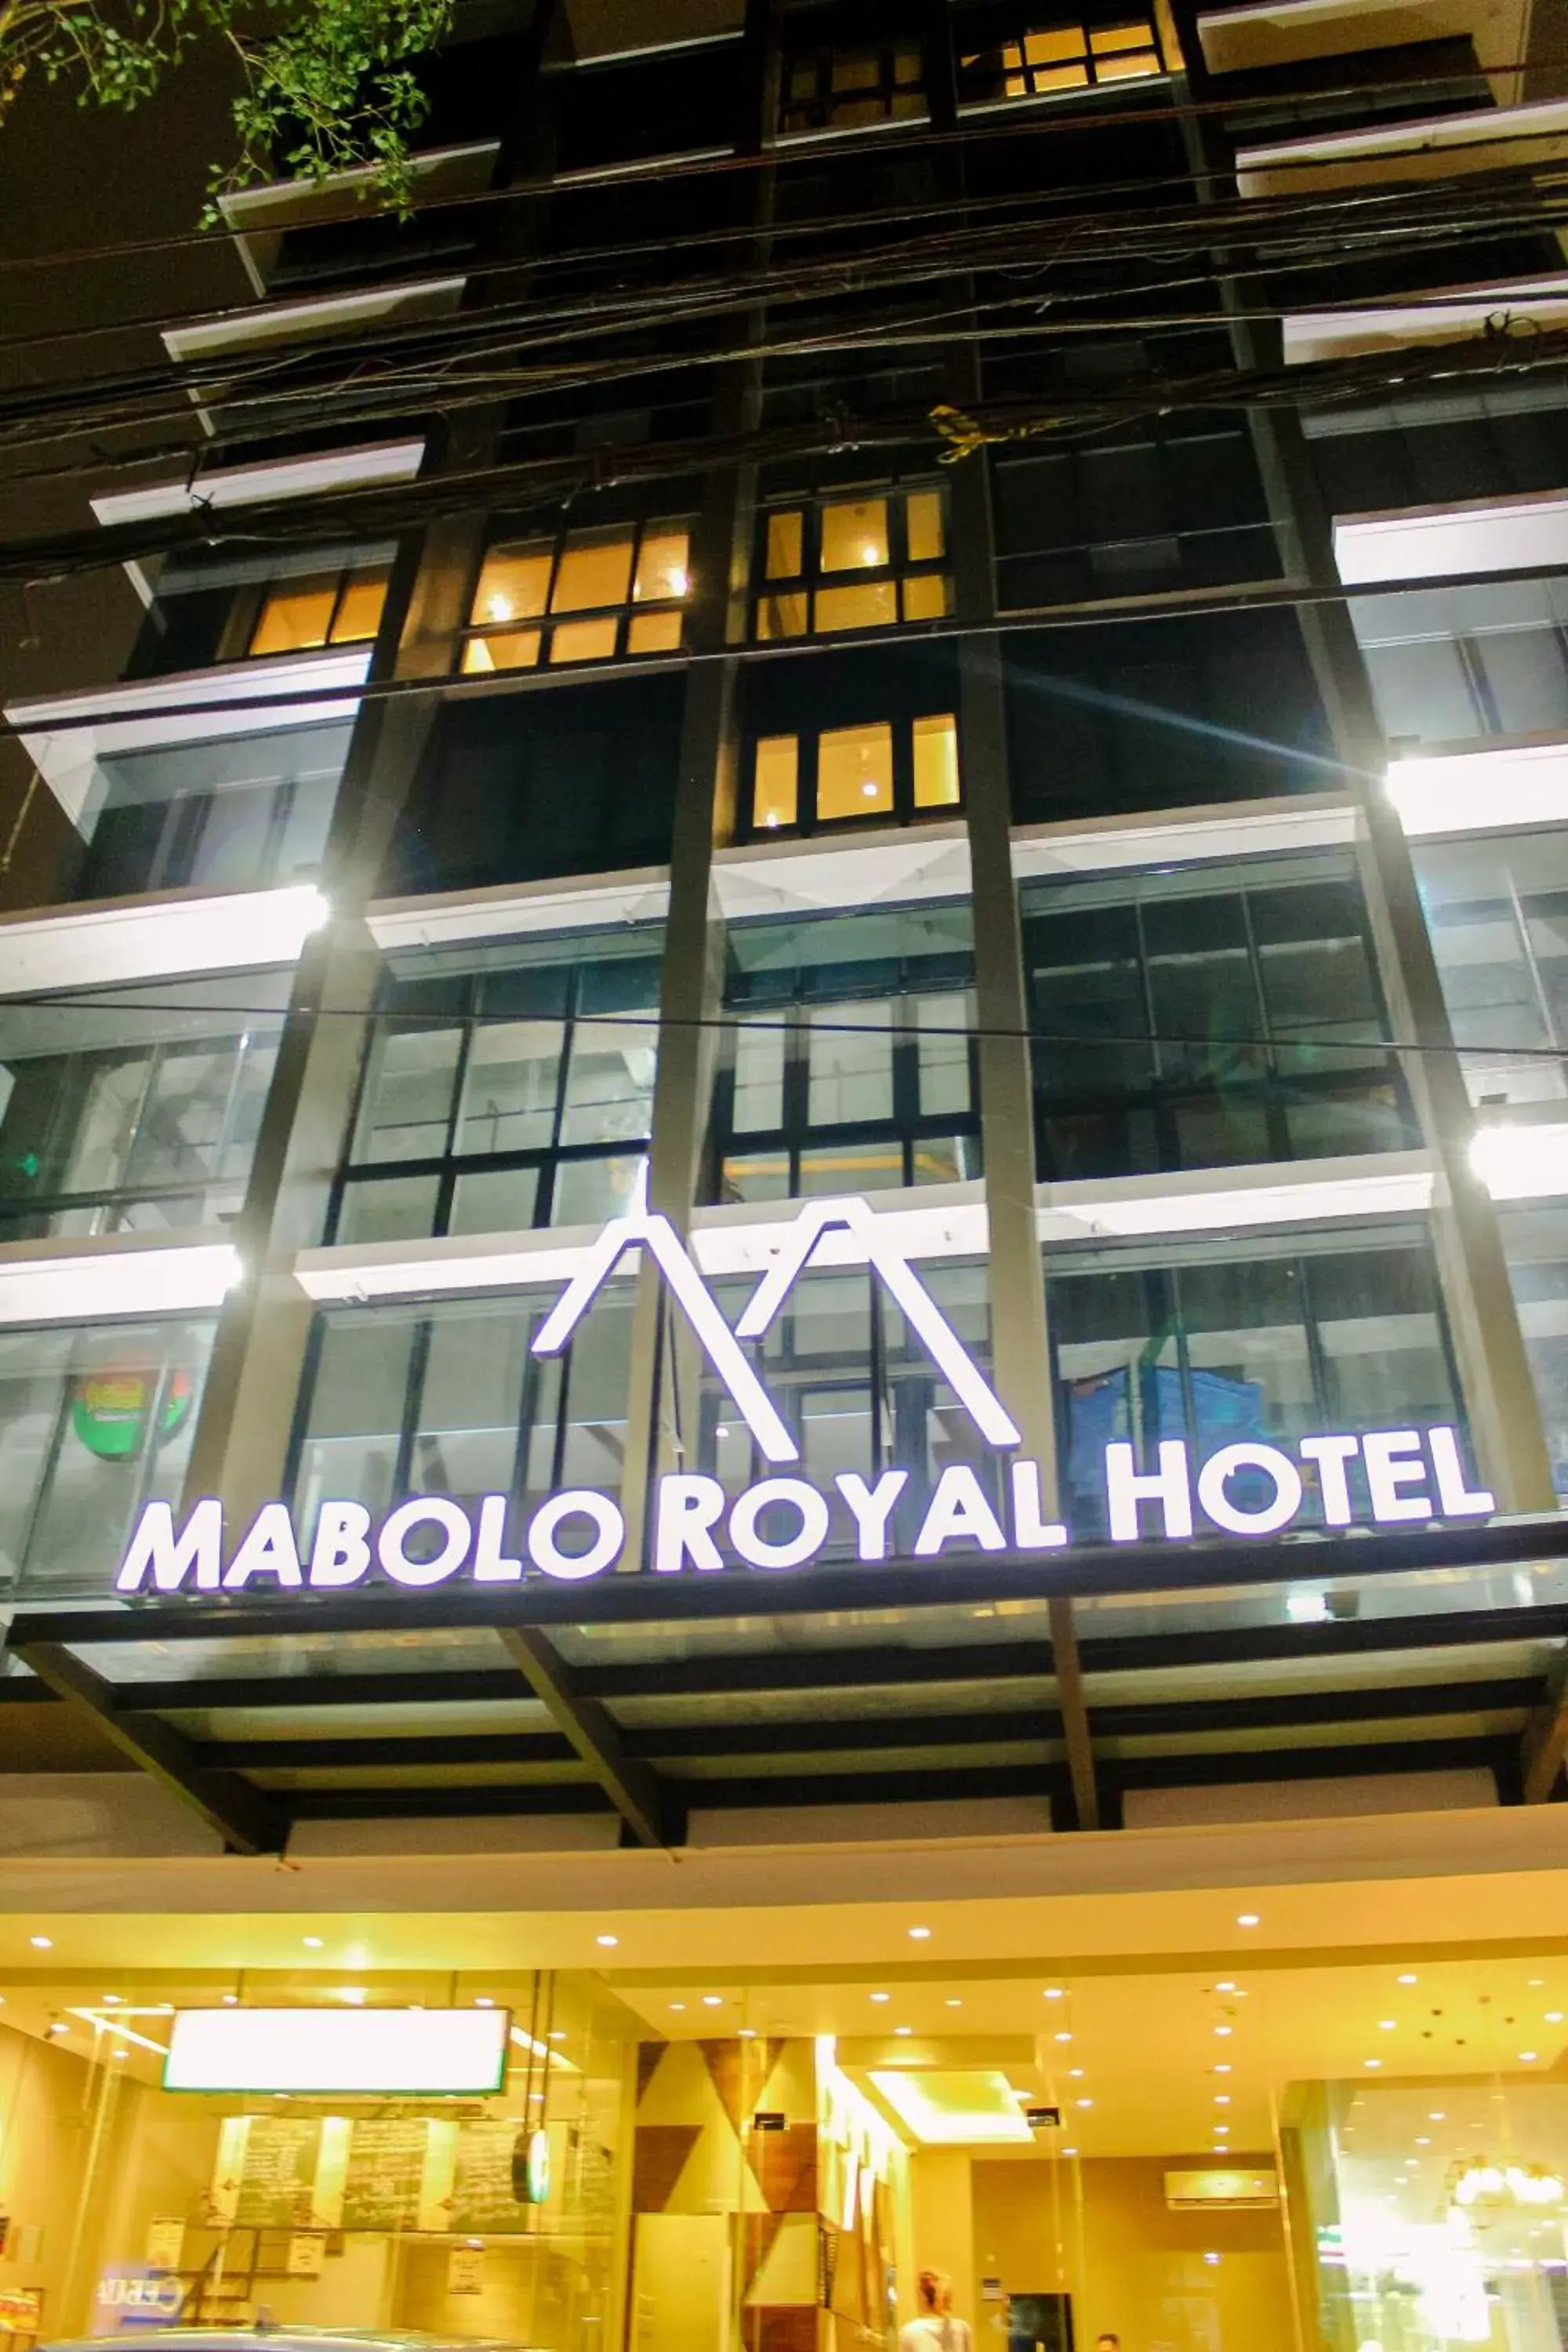 Facade/entrance, Property Building in Mabolo Royal Hotel